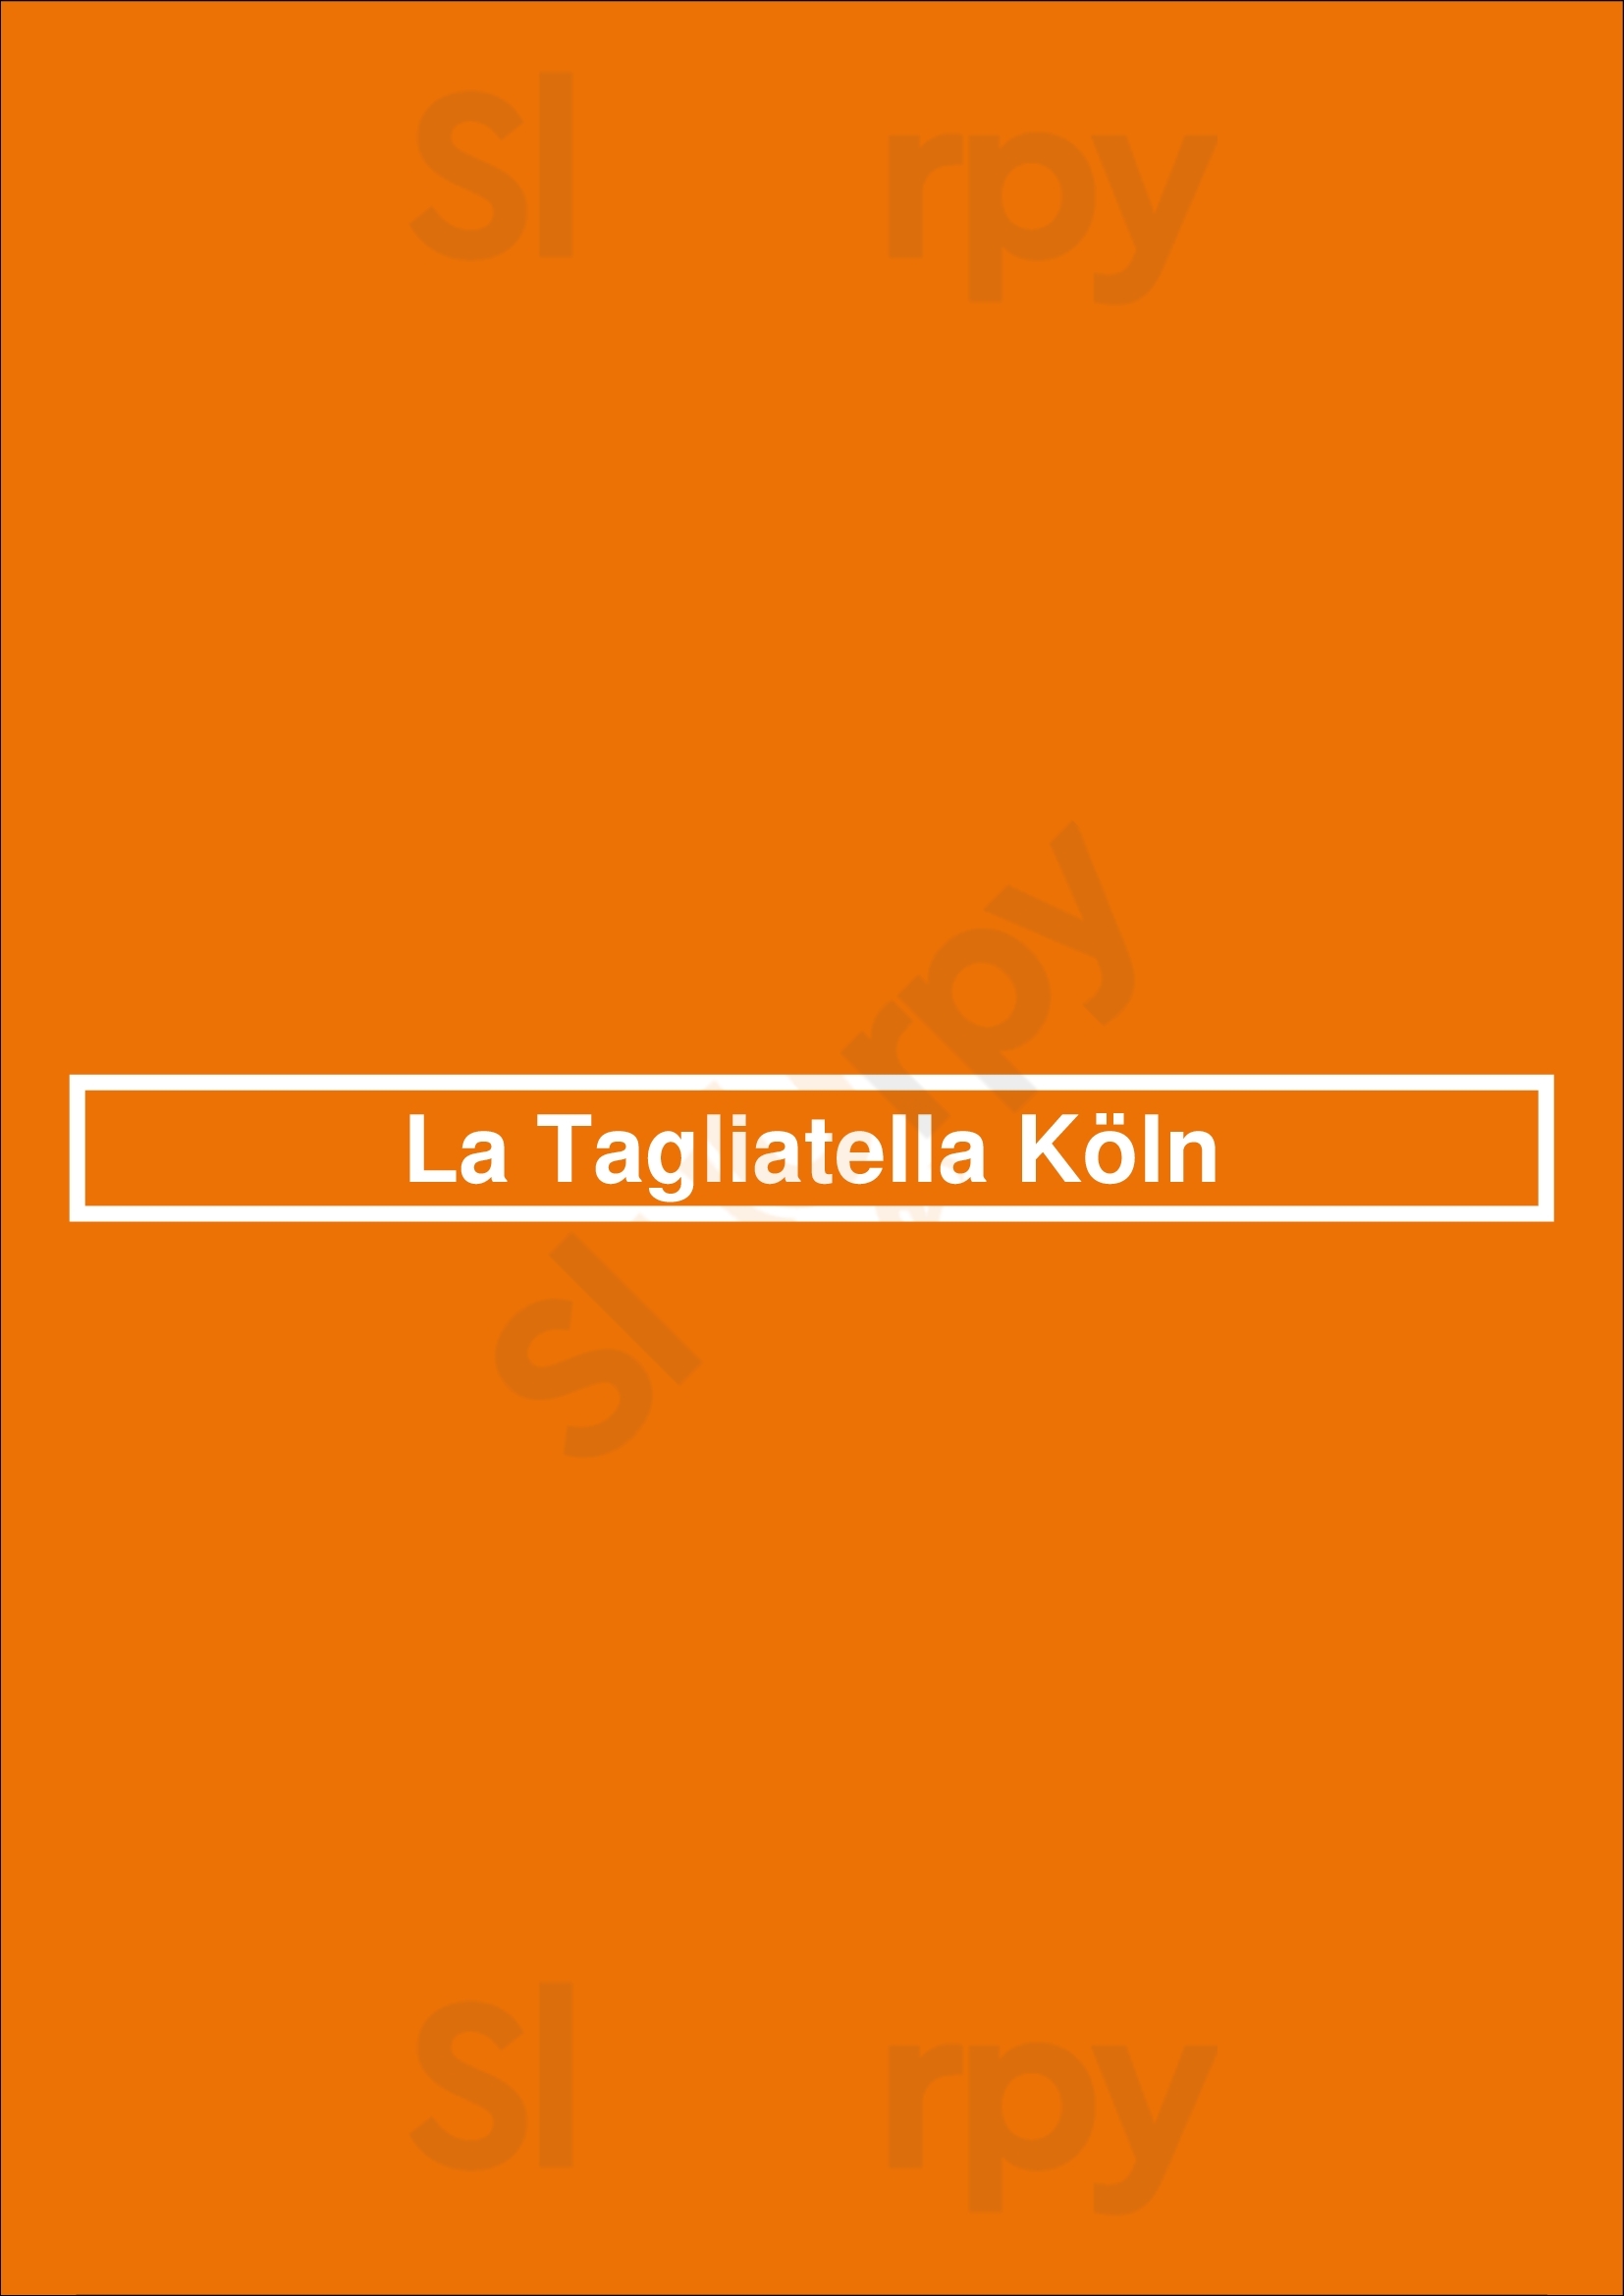 La Tagliatella Köln Köln Menu - 1